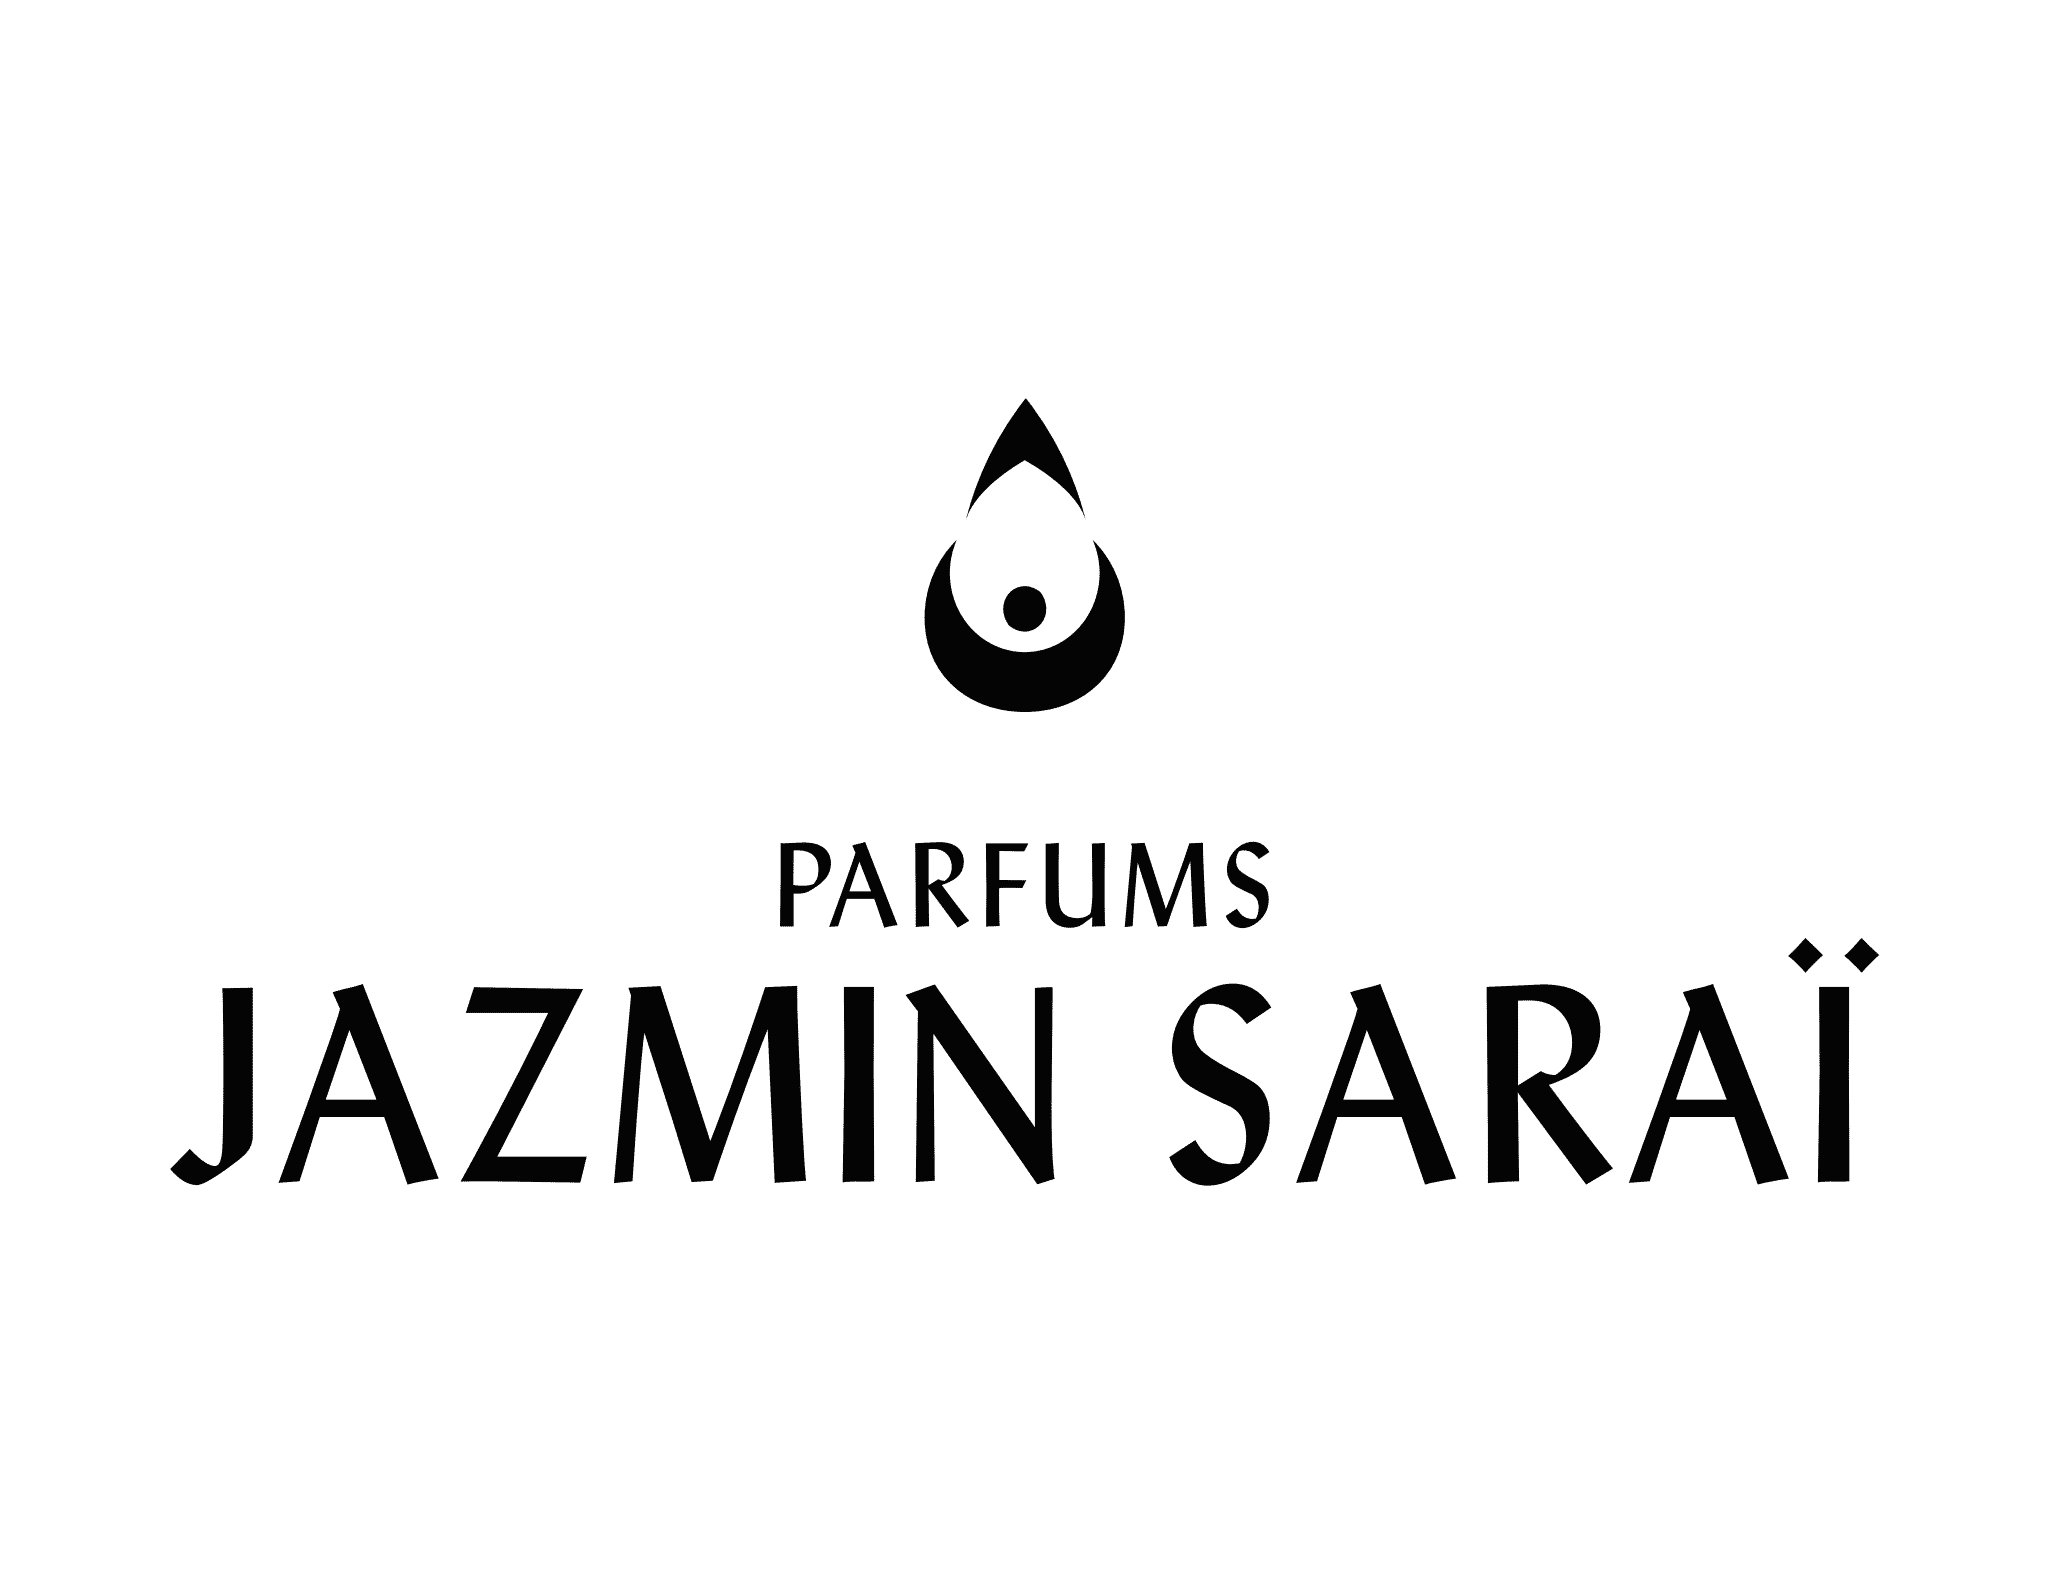 Jazmin Sarai logo